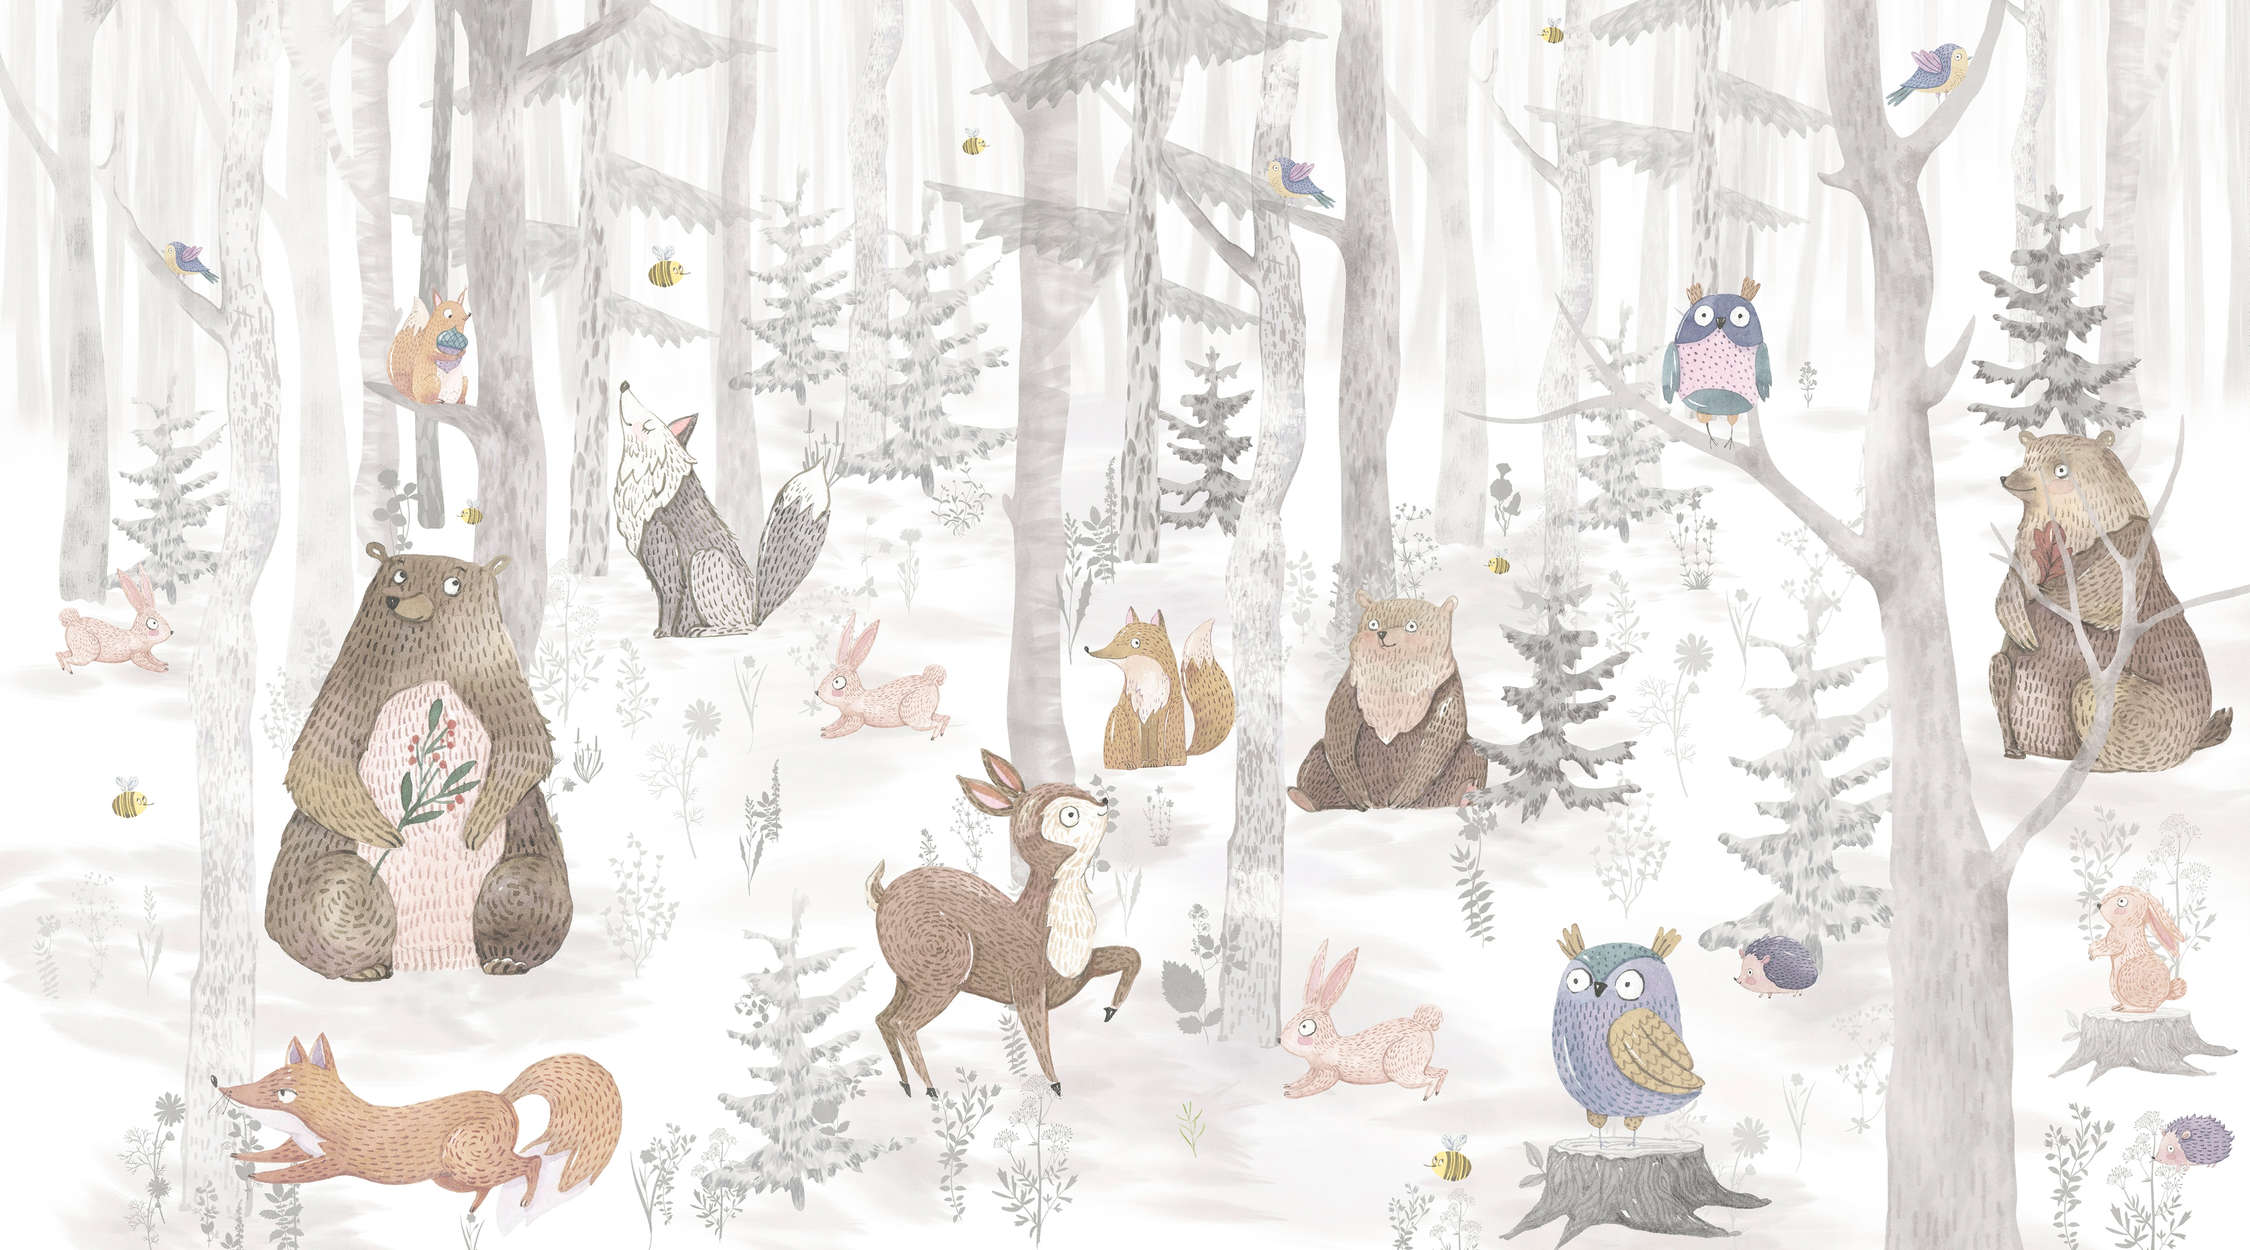             papiers peints à impression numérique forêt enchantée avec animaux - intissé structuré
        